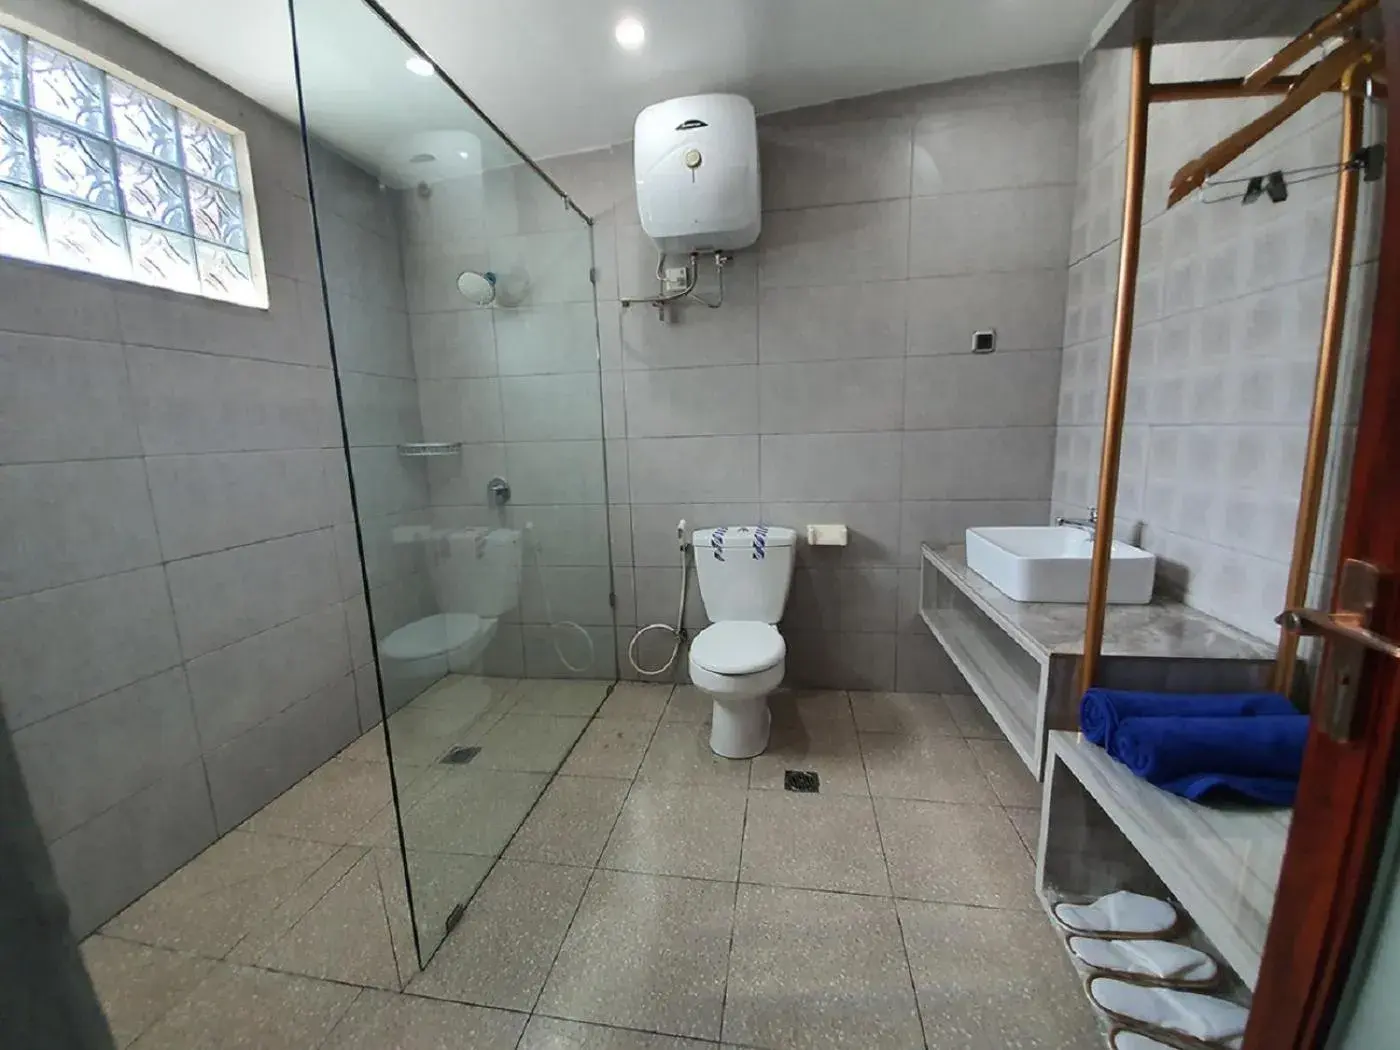 Bathroom in Sanur Agung Hotel